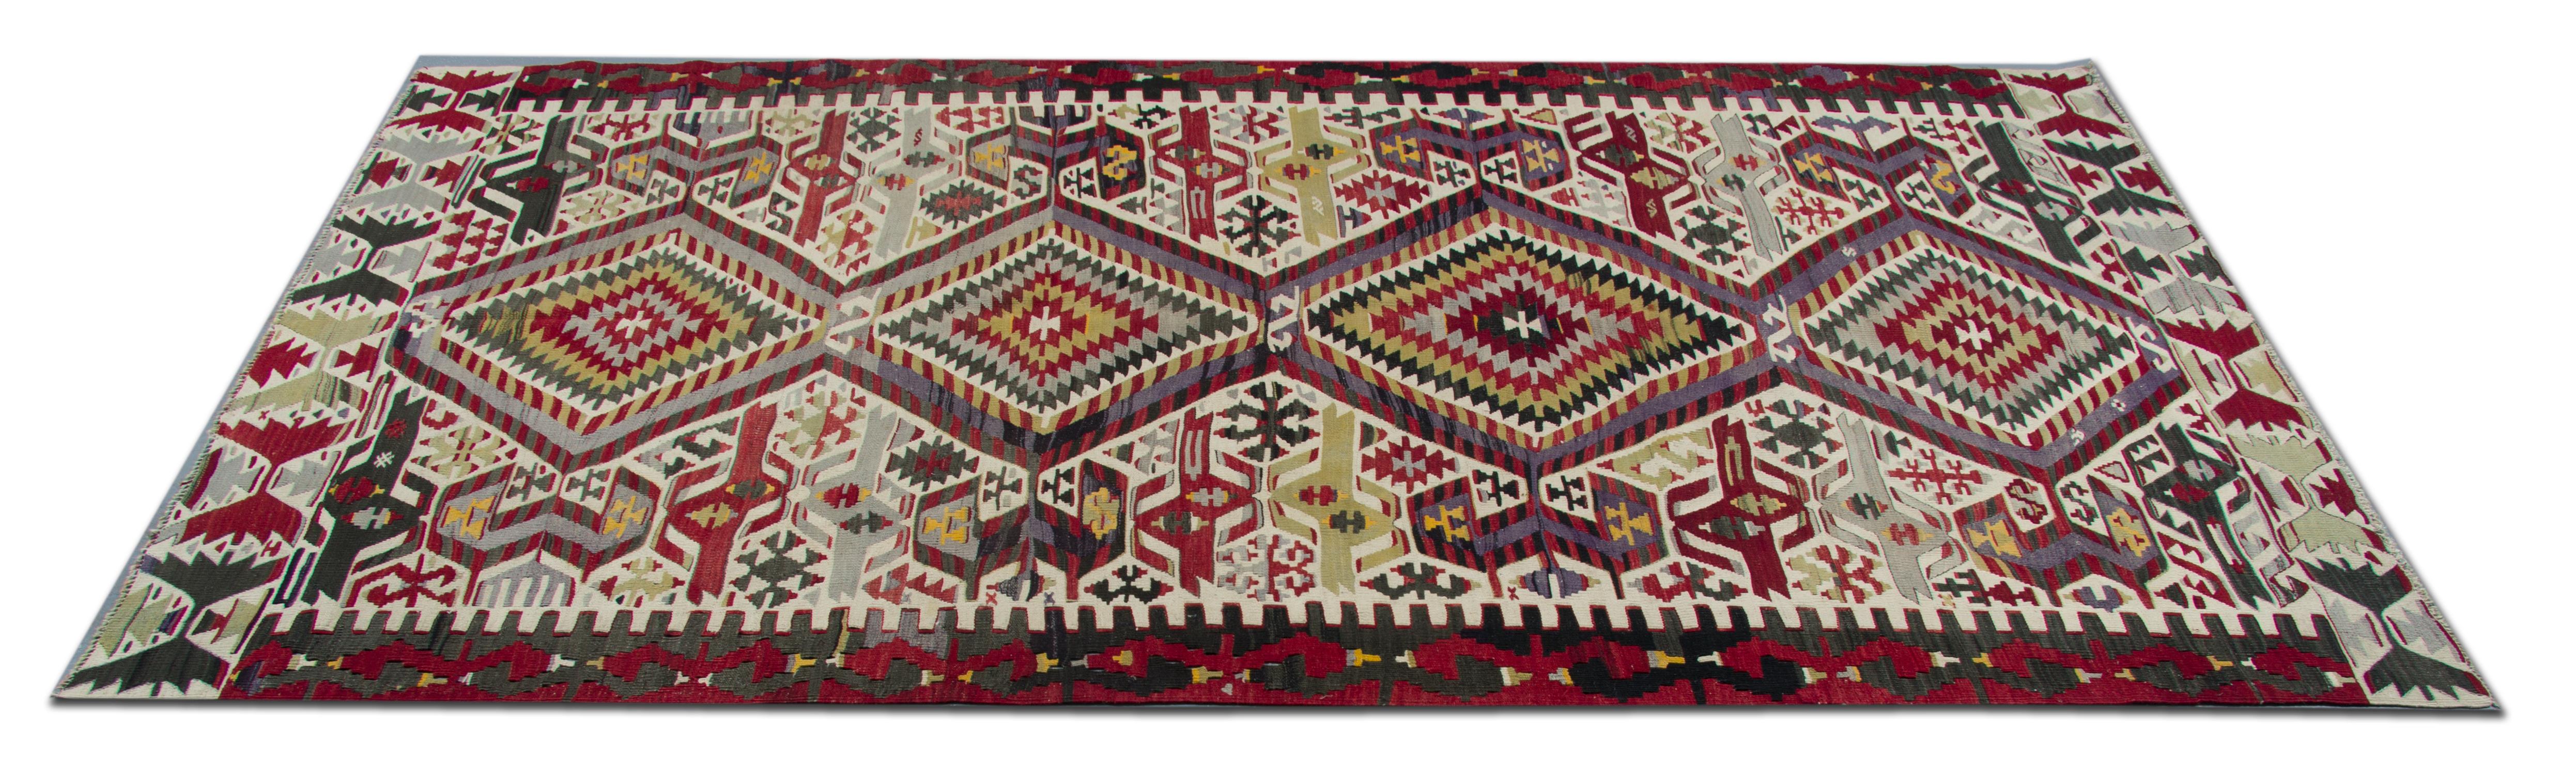 modern turkish rugs uk